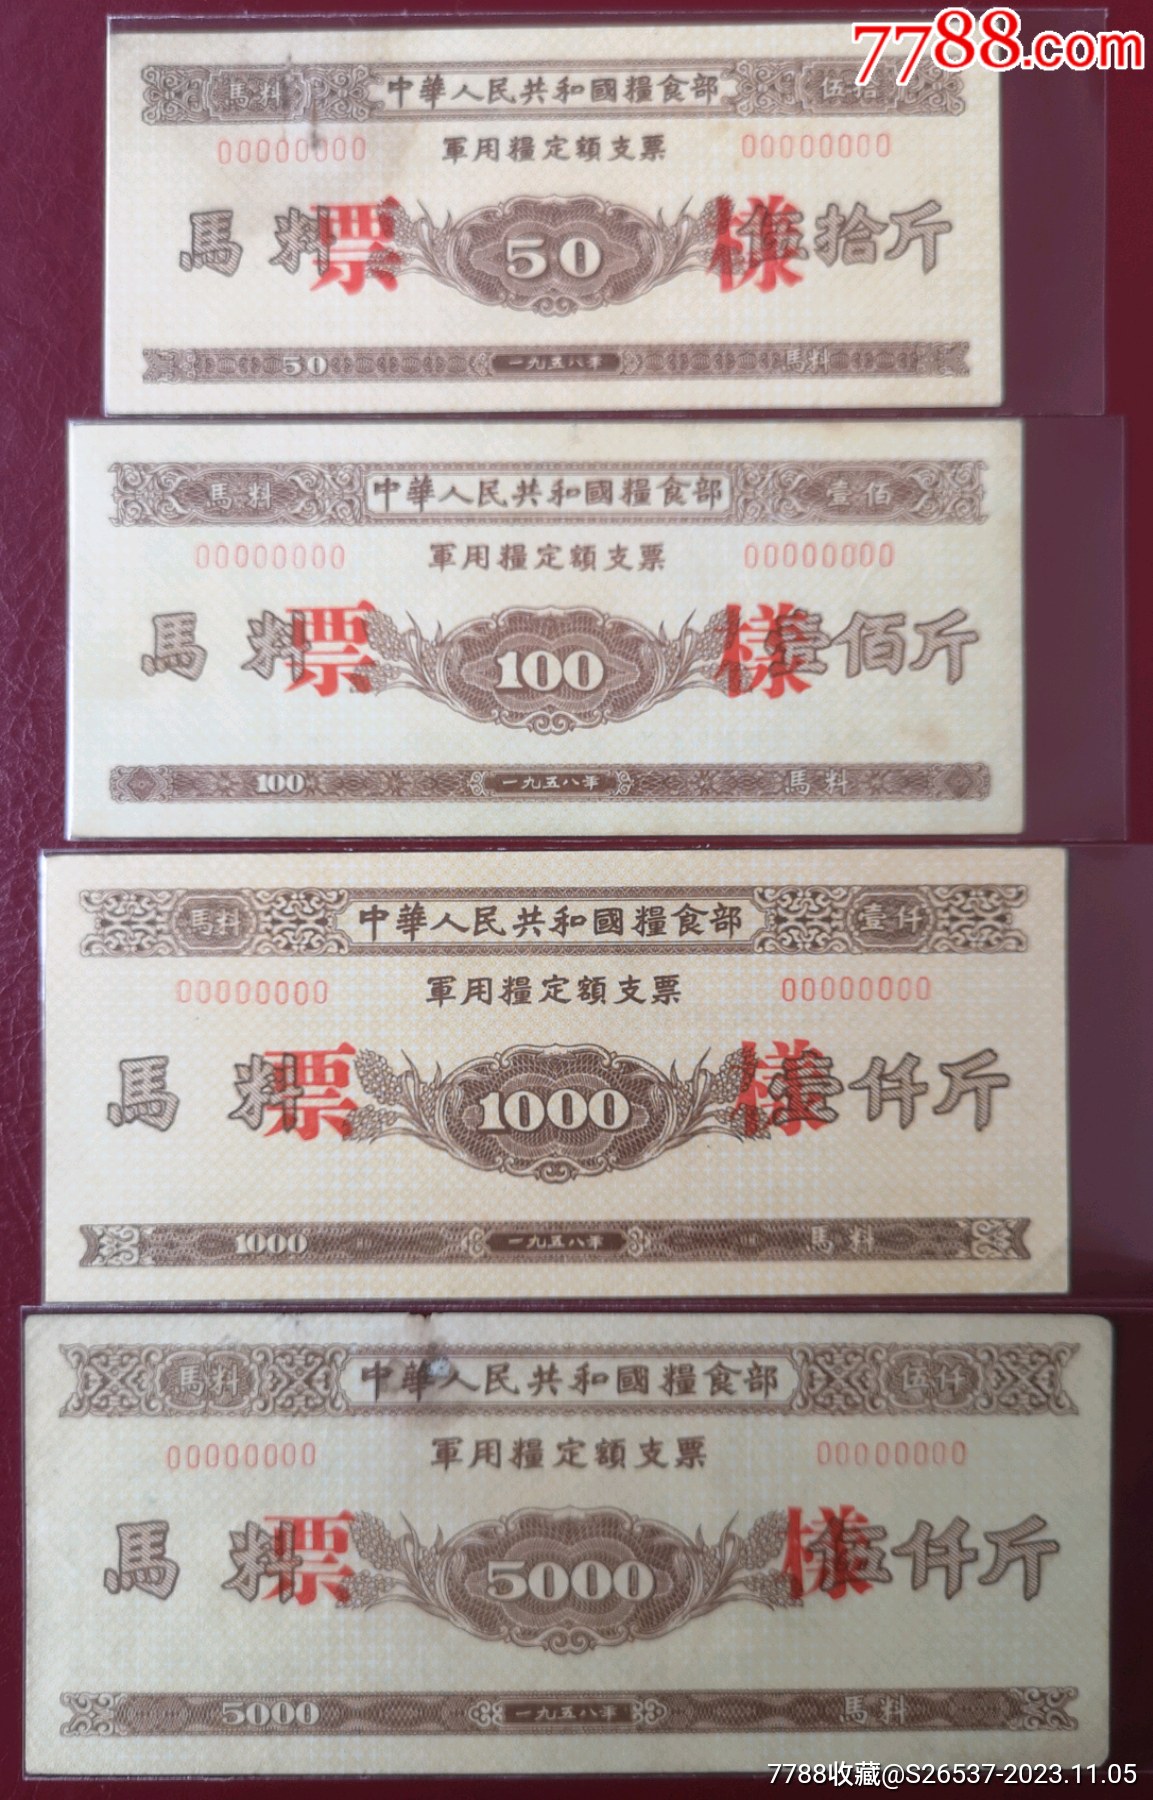 1958中華人民共和國糧食部*用糧定額支票《樣張》16全_價格14318元_第4張_